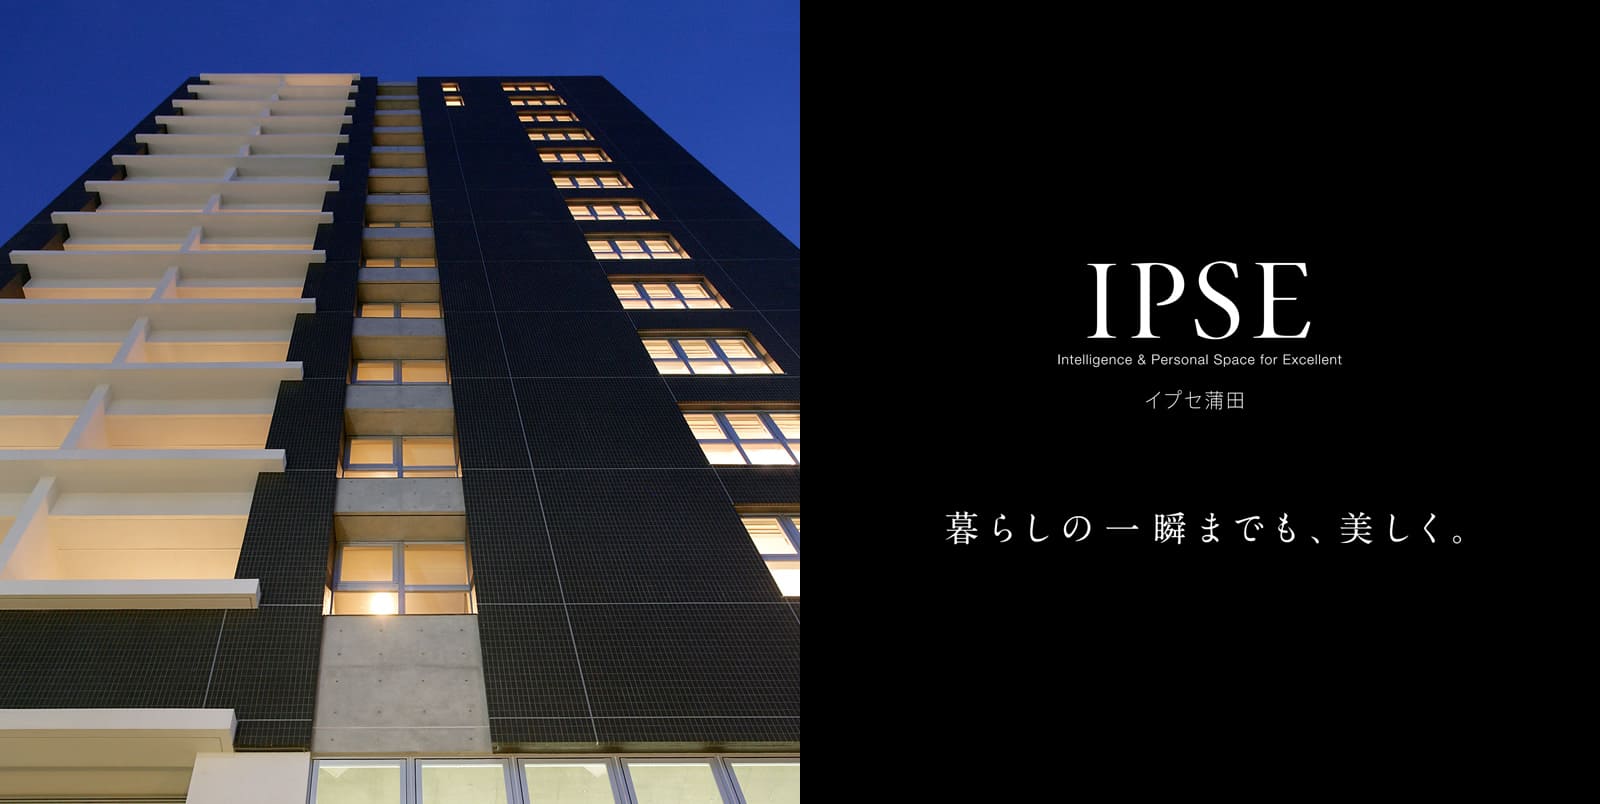 イプセ蒲田 IPSE Intelligence & Personal Space for Excellent 暮らしの一瞬までも、美しく